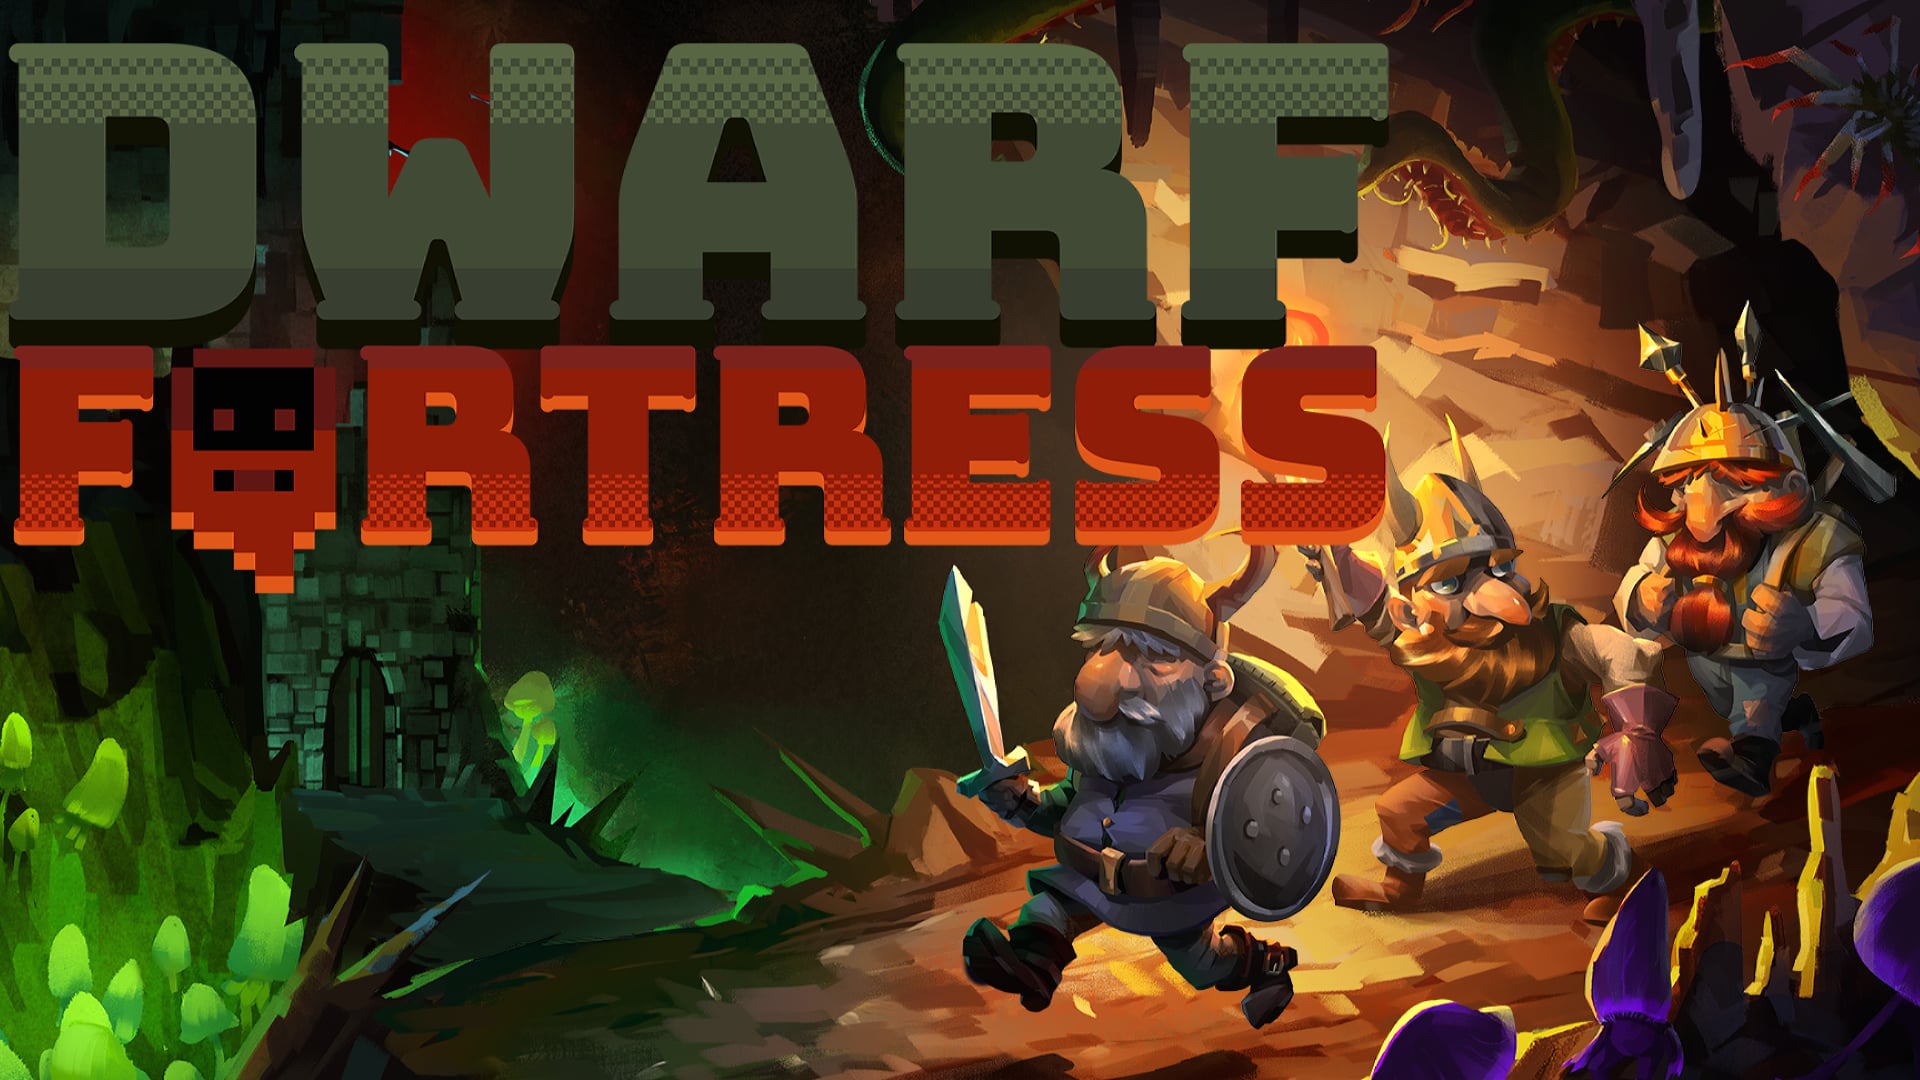 Dwarf Fortress at 1024 x 1024 iPad size wallpapers HD quality